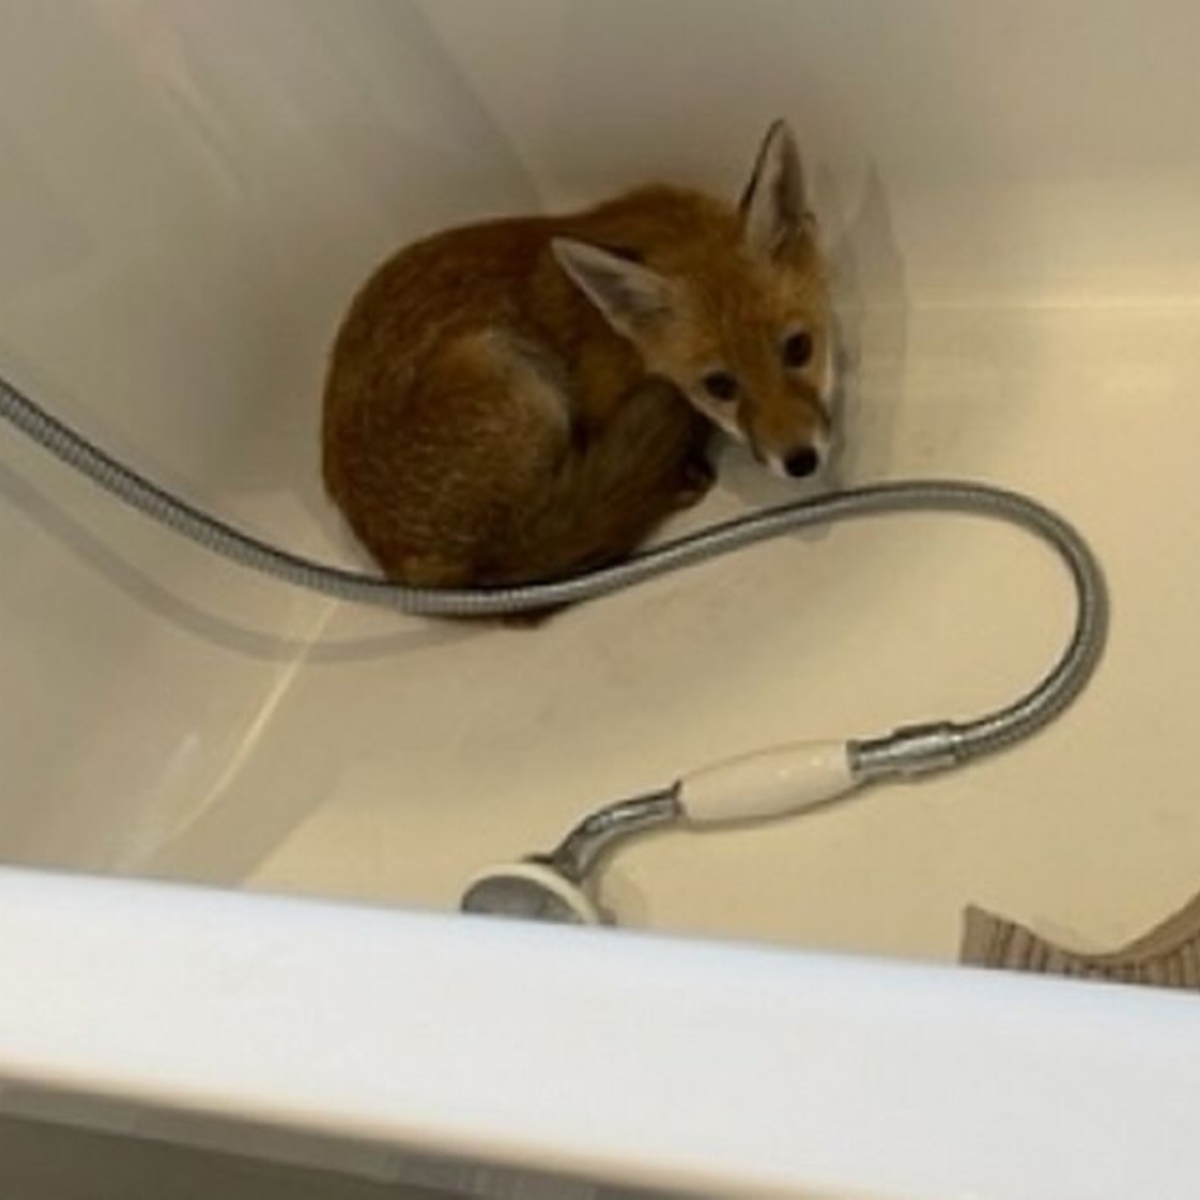  Família se surpreende ao encontrar filhote de raposa na banheira de casa 